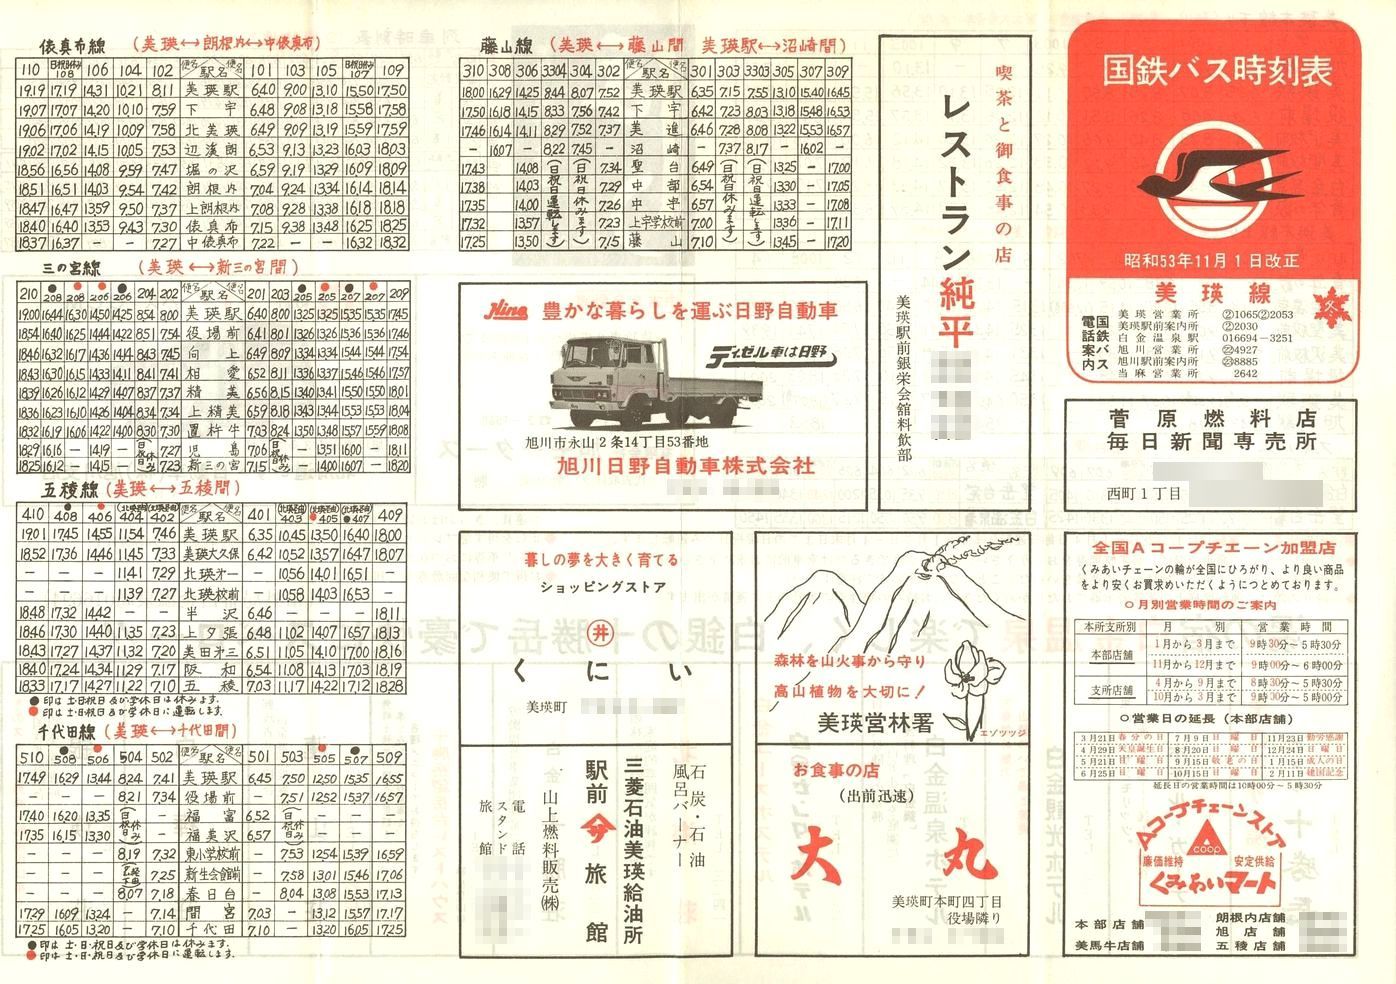 1978-11-01改正_国鉄バス_美瑛線時刻表表面